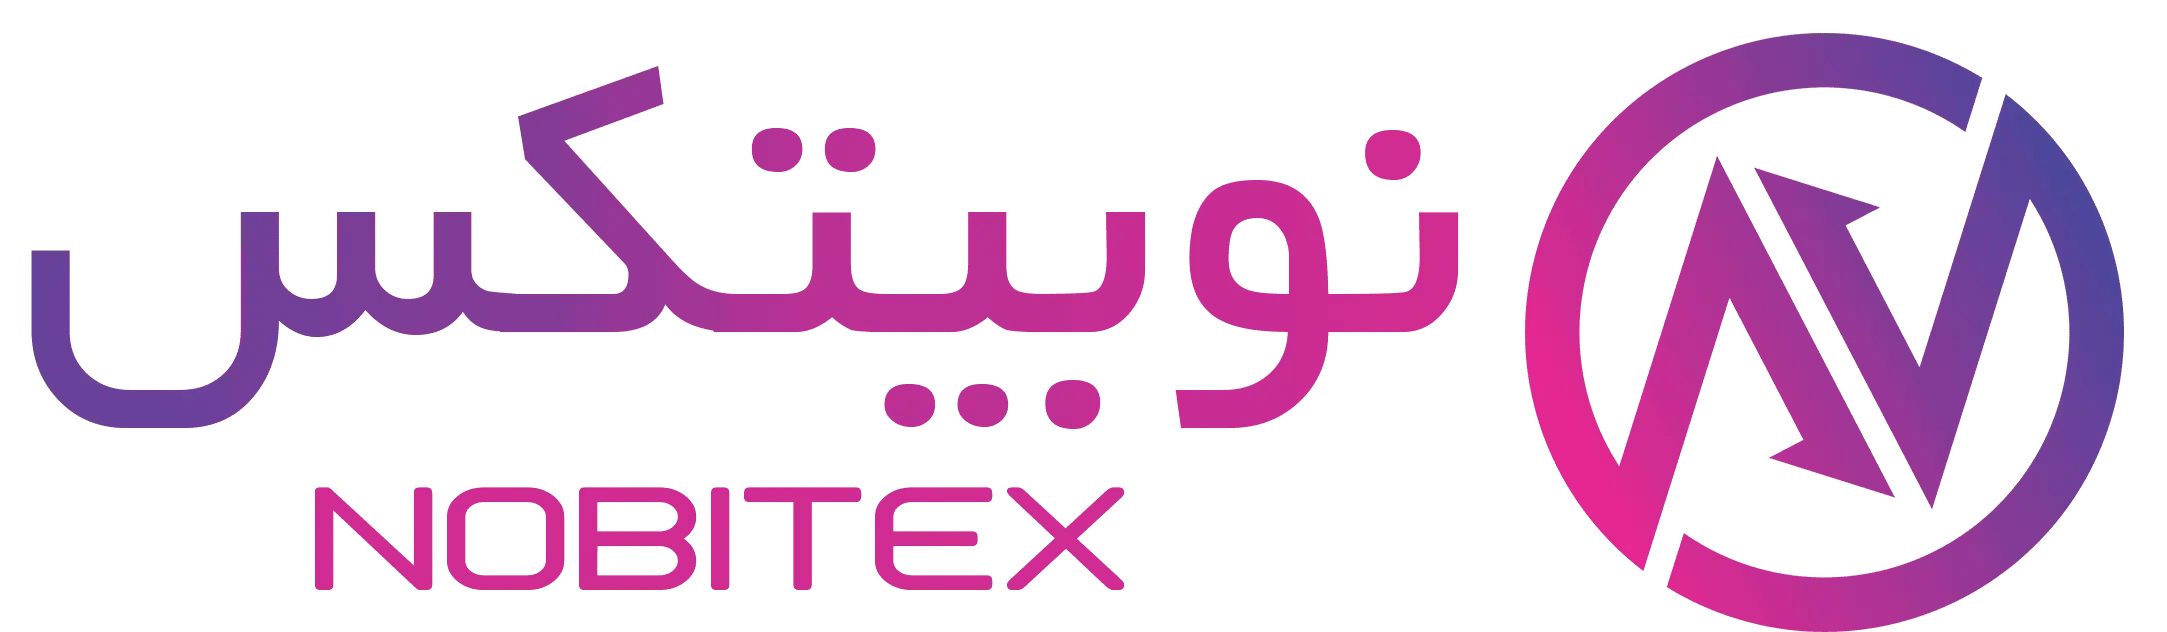 nobitex logo 1 پلتفرم های معاملاتی